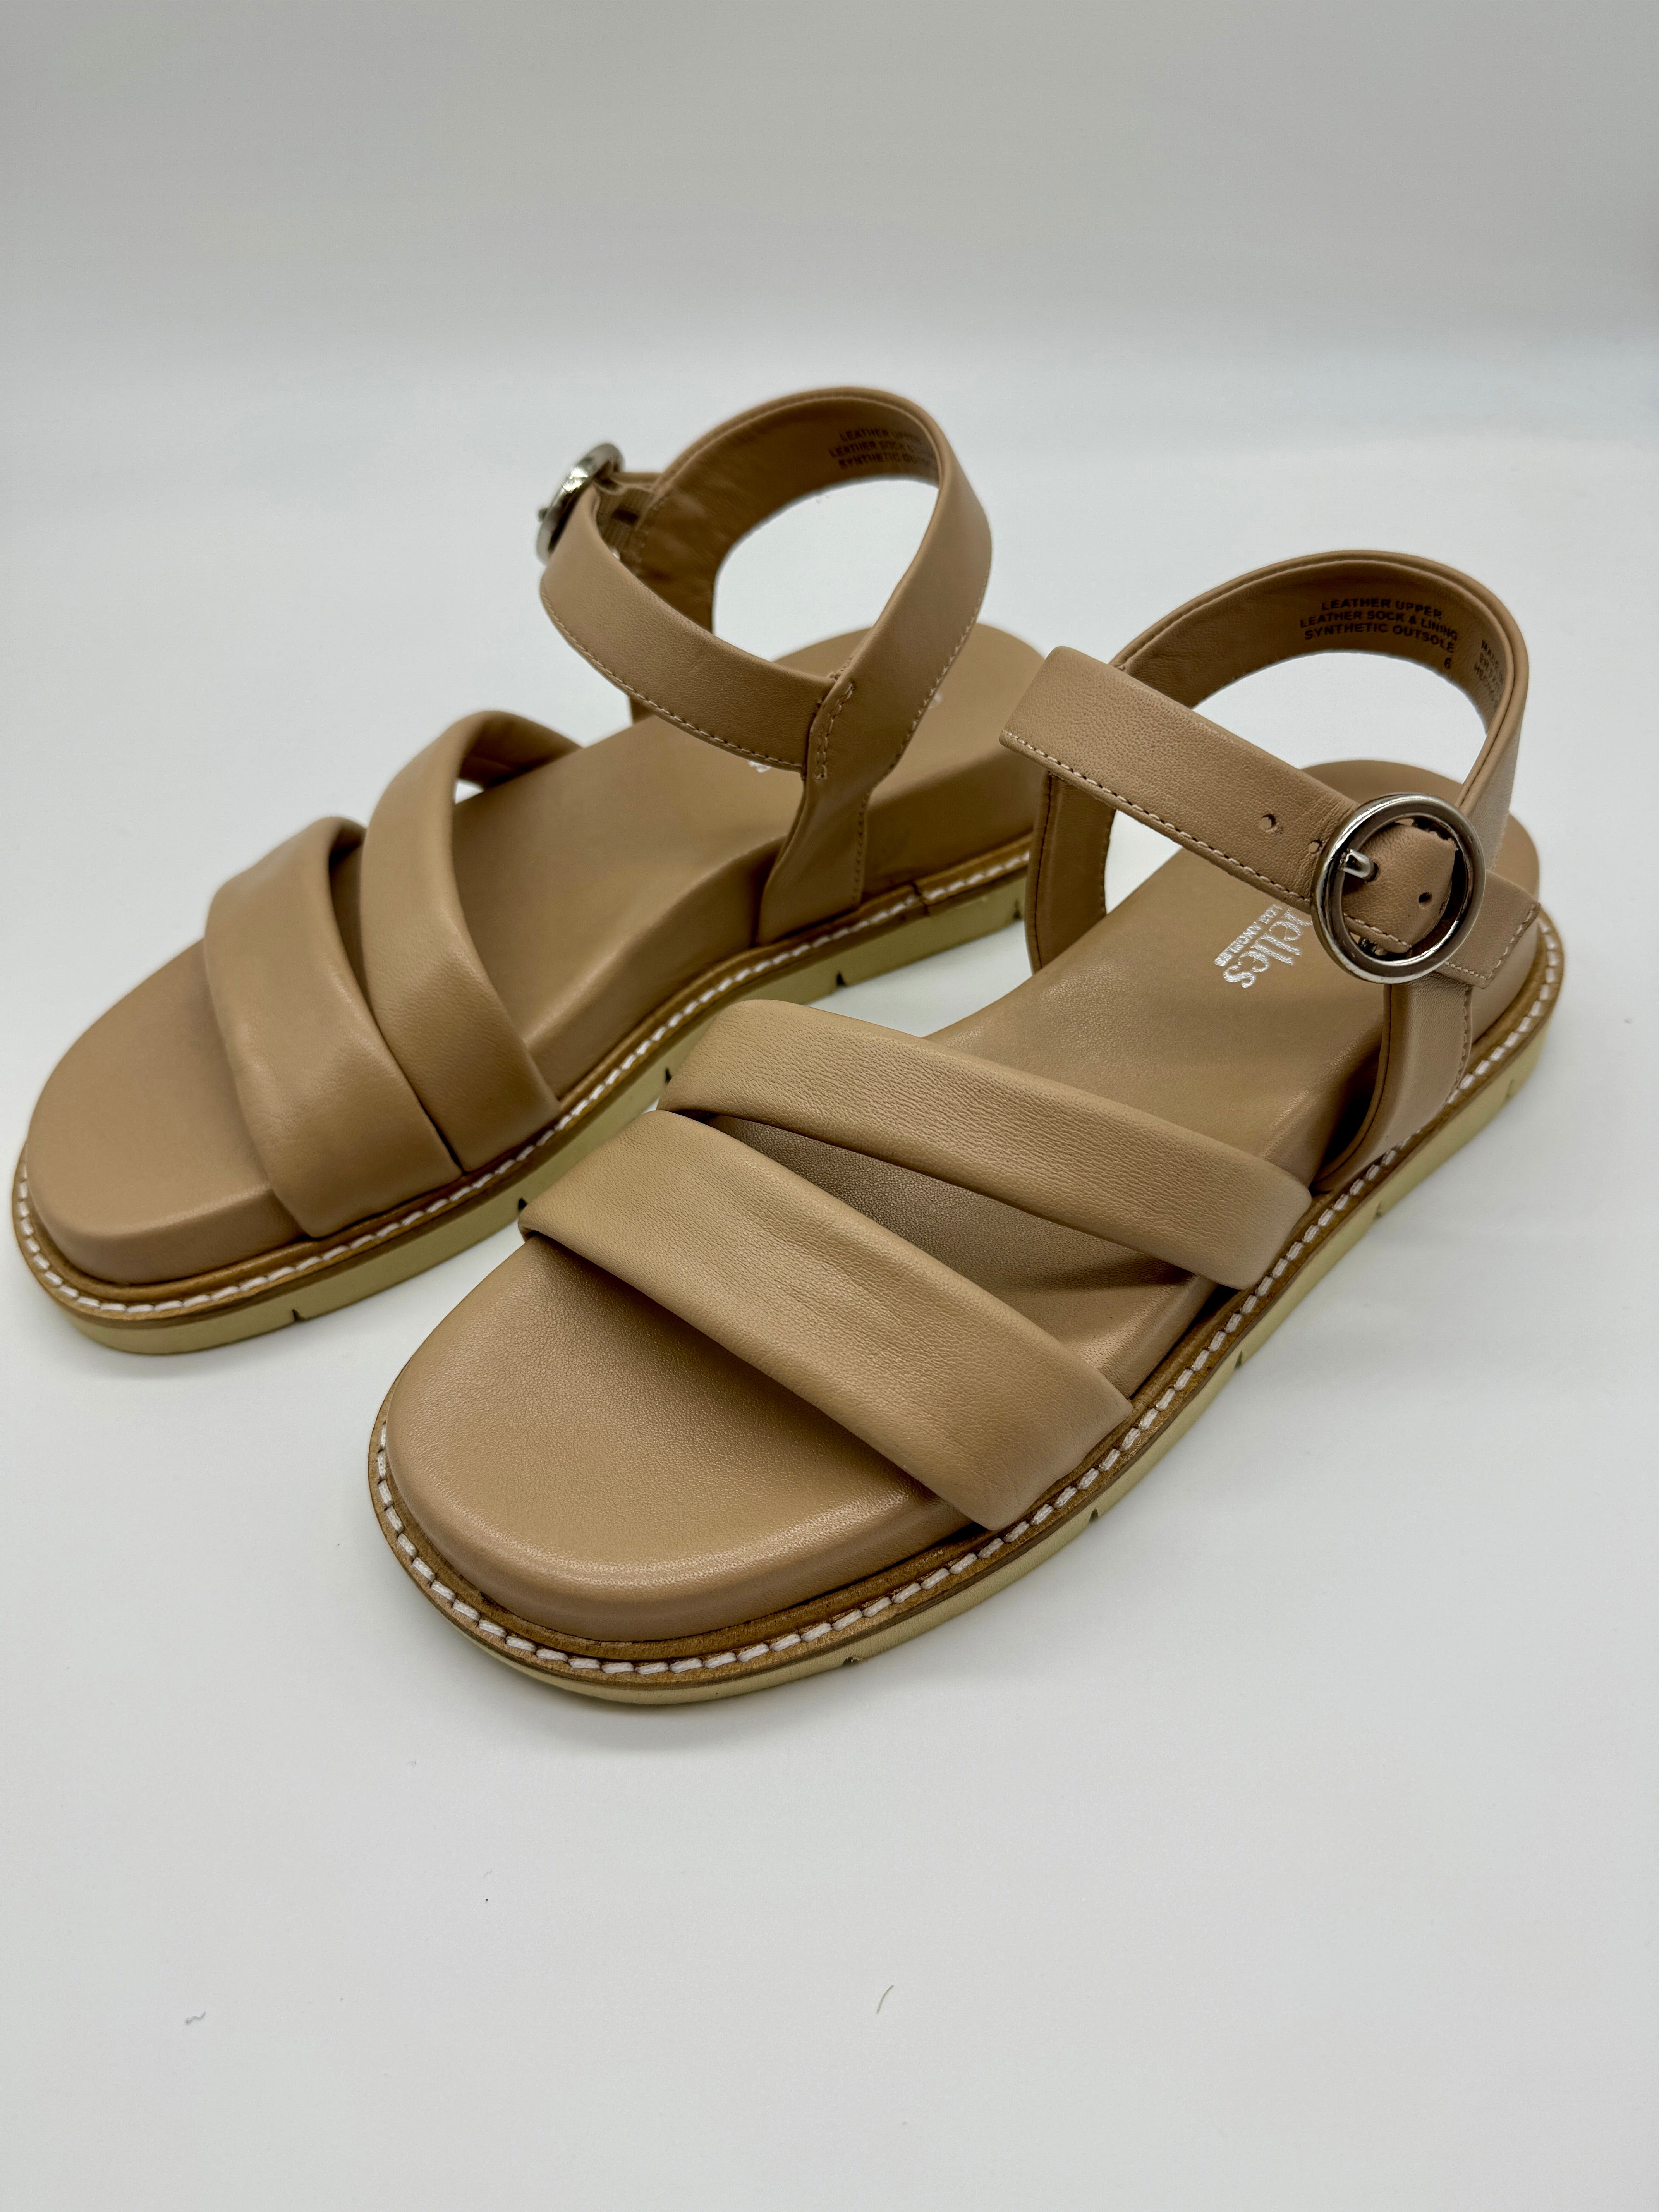 Seychelles Tangelo Sandals Beige Leather-312 Shoes-Little Bird Boutique